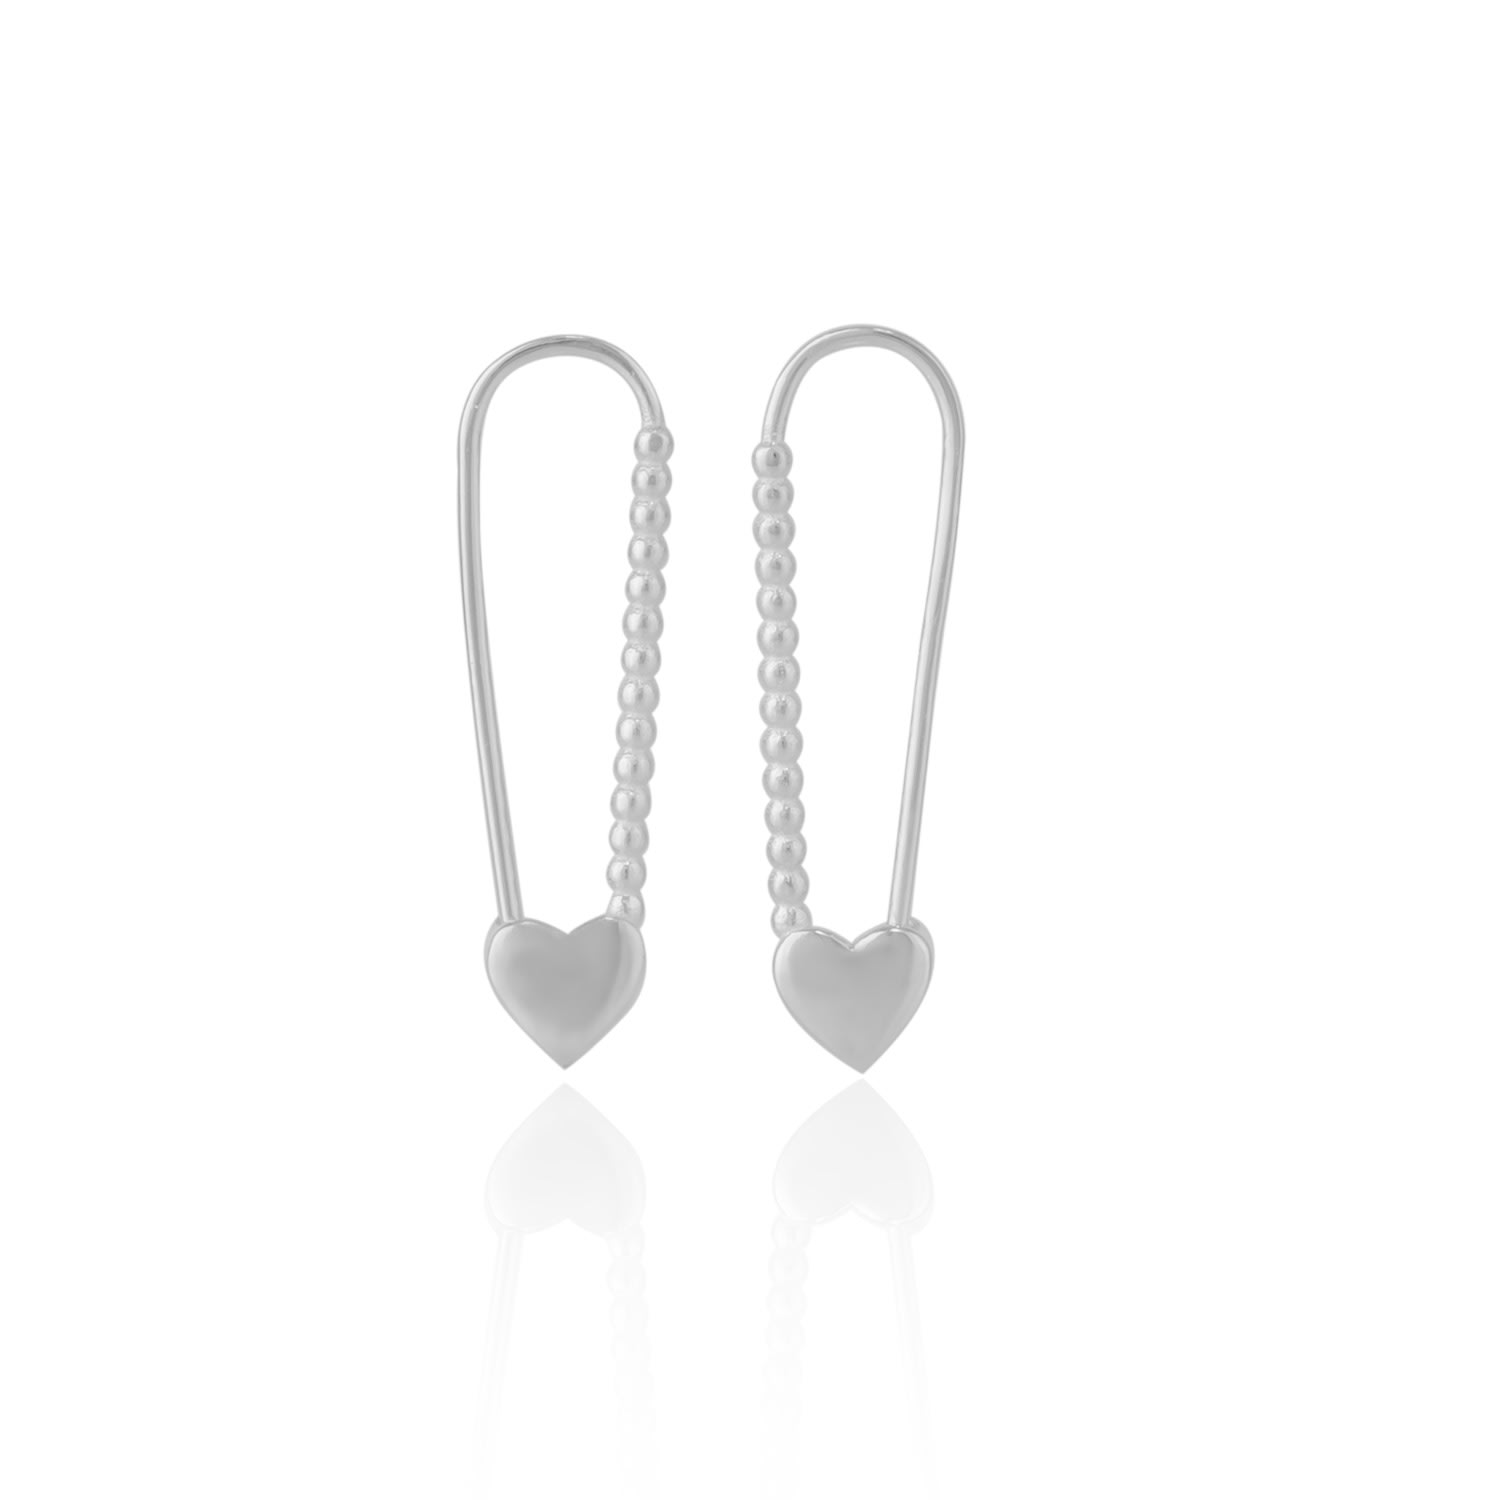 Spero London Women's Heart Beaded Safety Pin Sterling Silver Earring - Silver